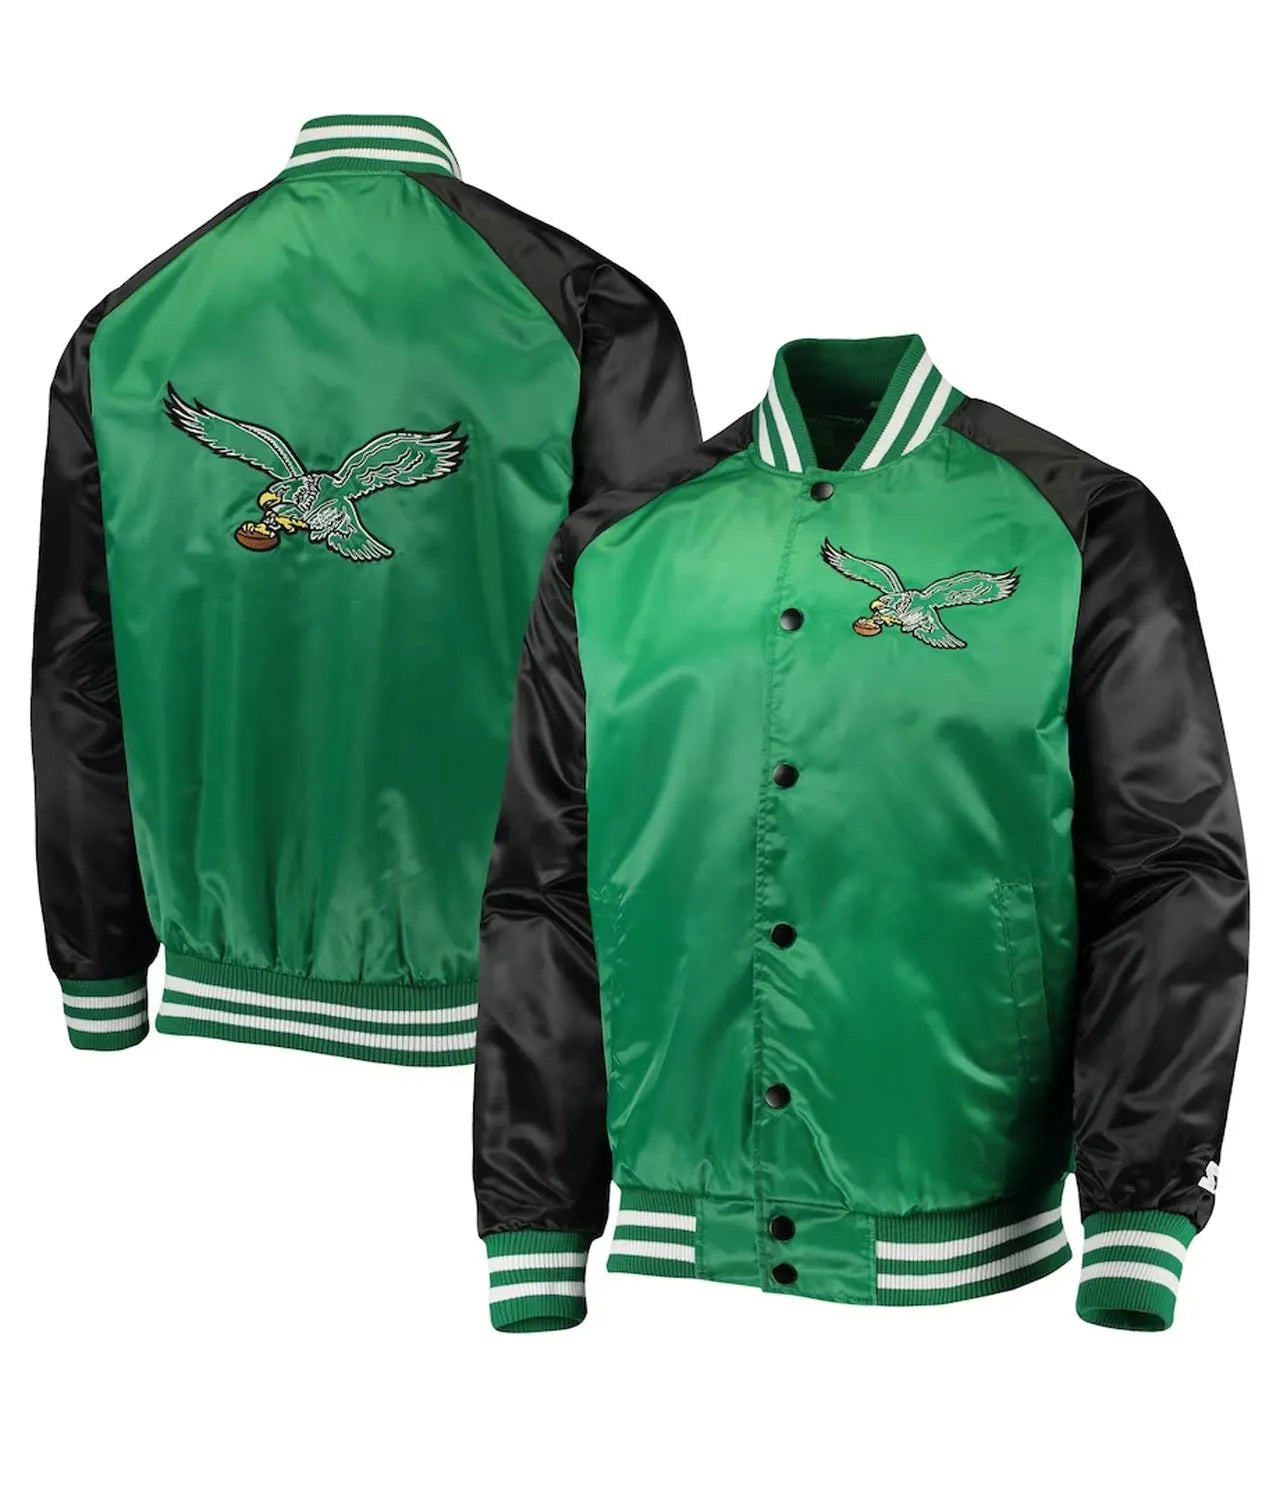 NFL Philadelphia Eagles 80s Letterman Baseball Jacket Bomber Green Black Satin